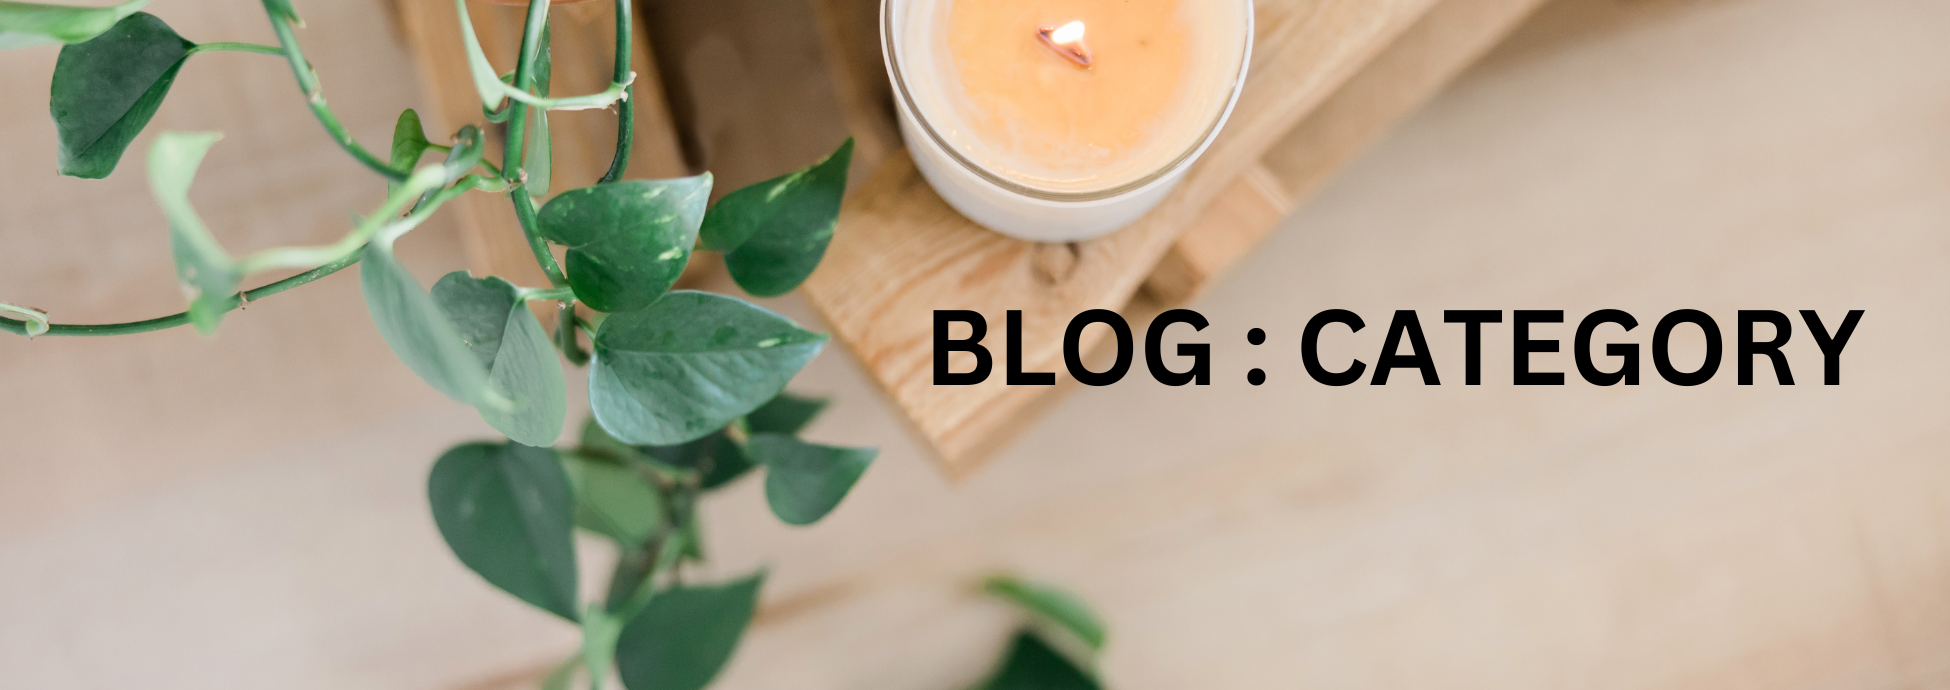 Blog - The Healing Bliss